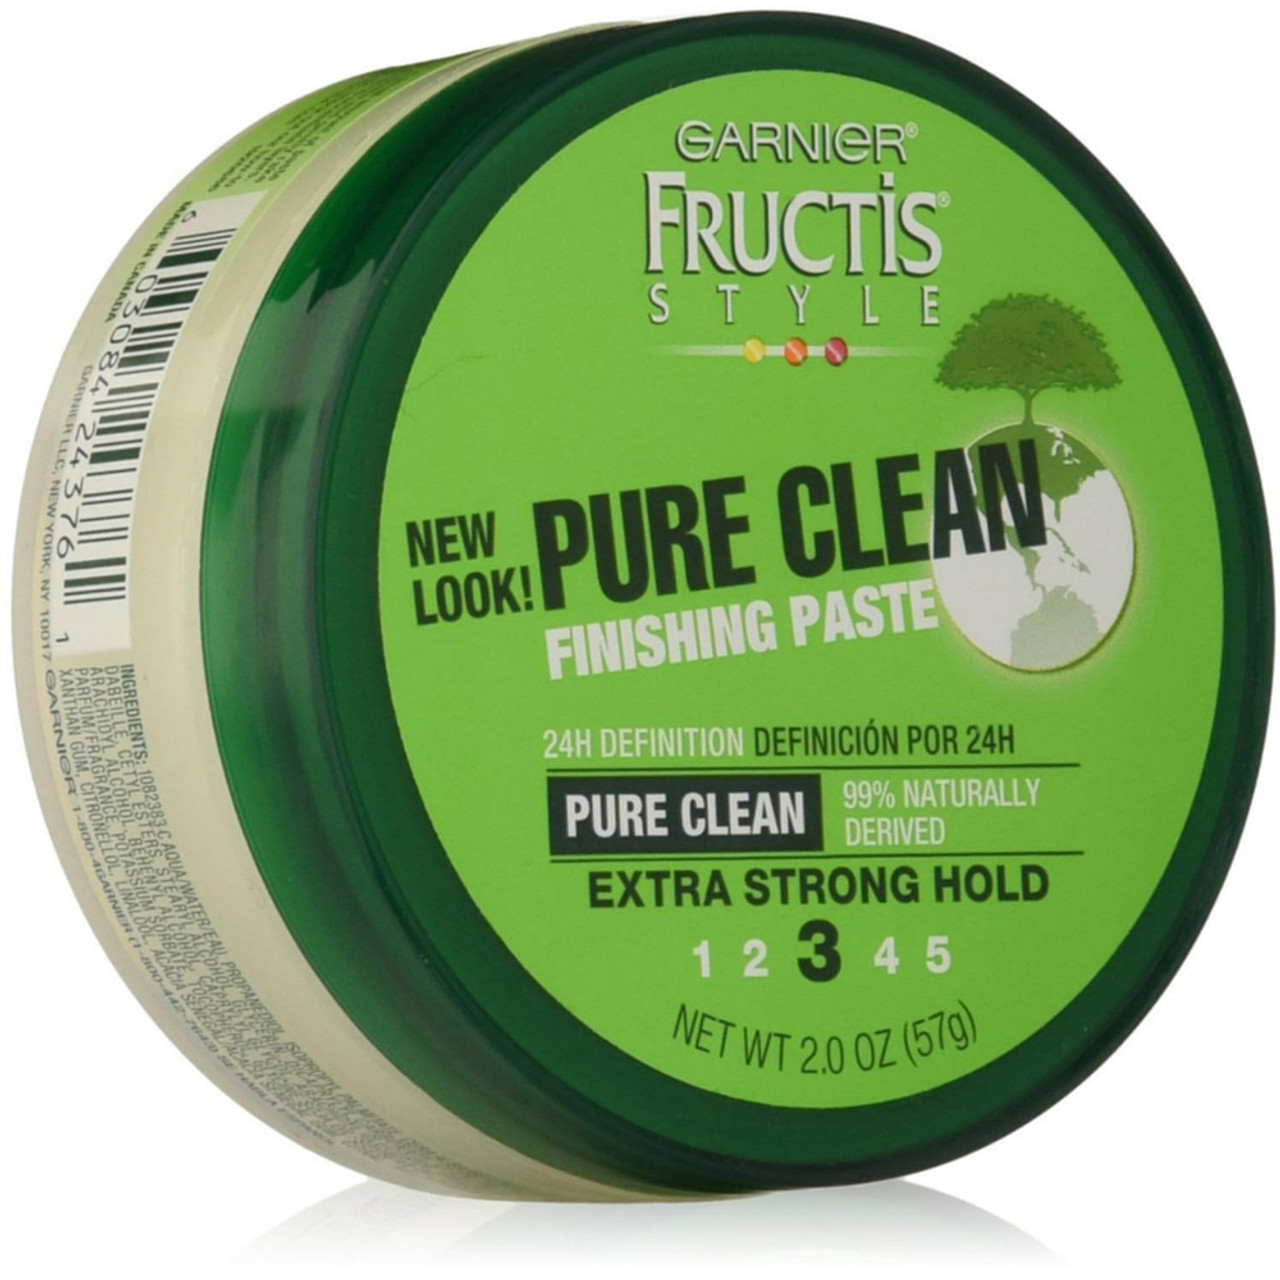 Garnier Fructis Clean Finishing Paste - 2 oz - Online Drugstore ©